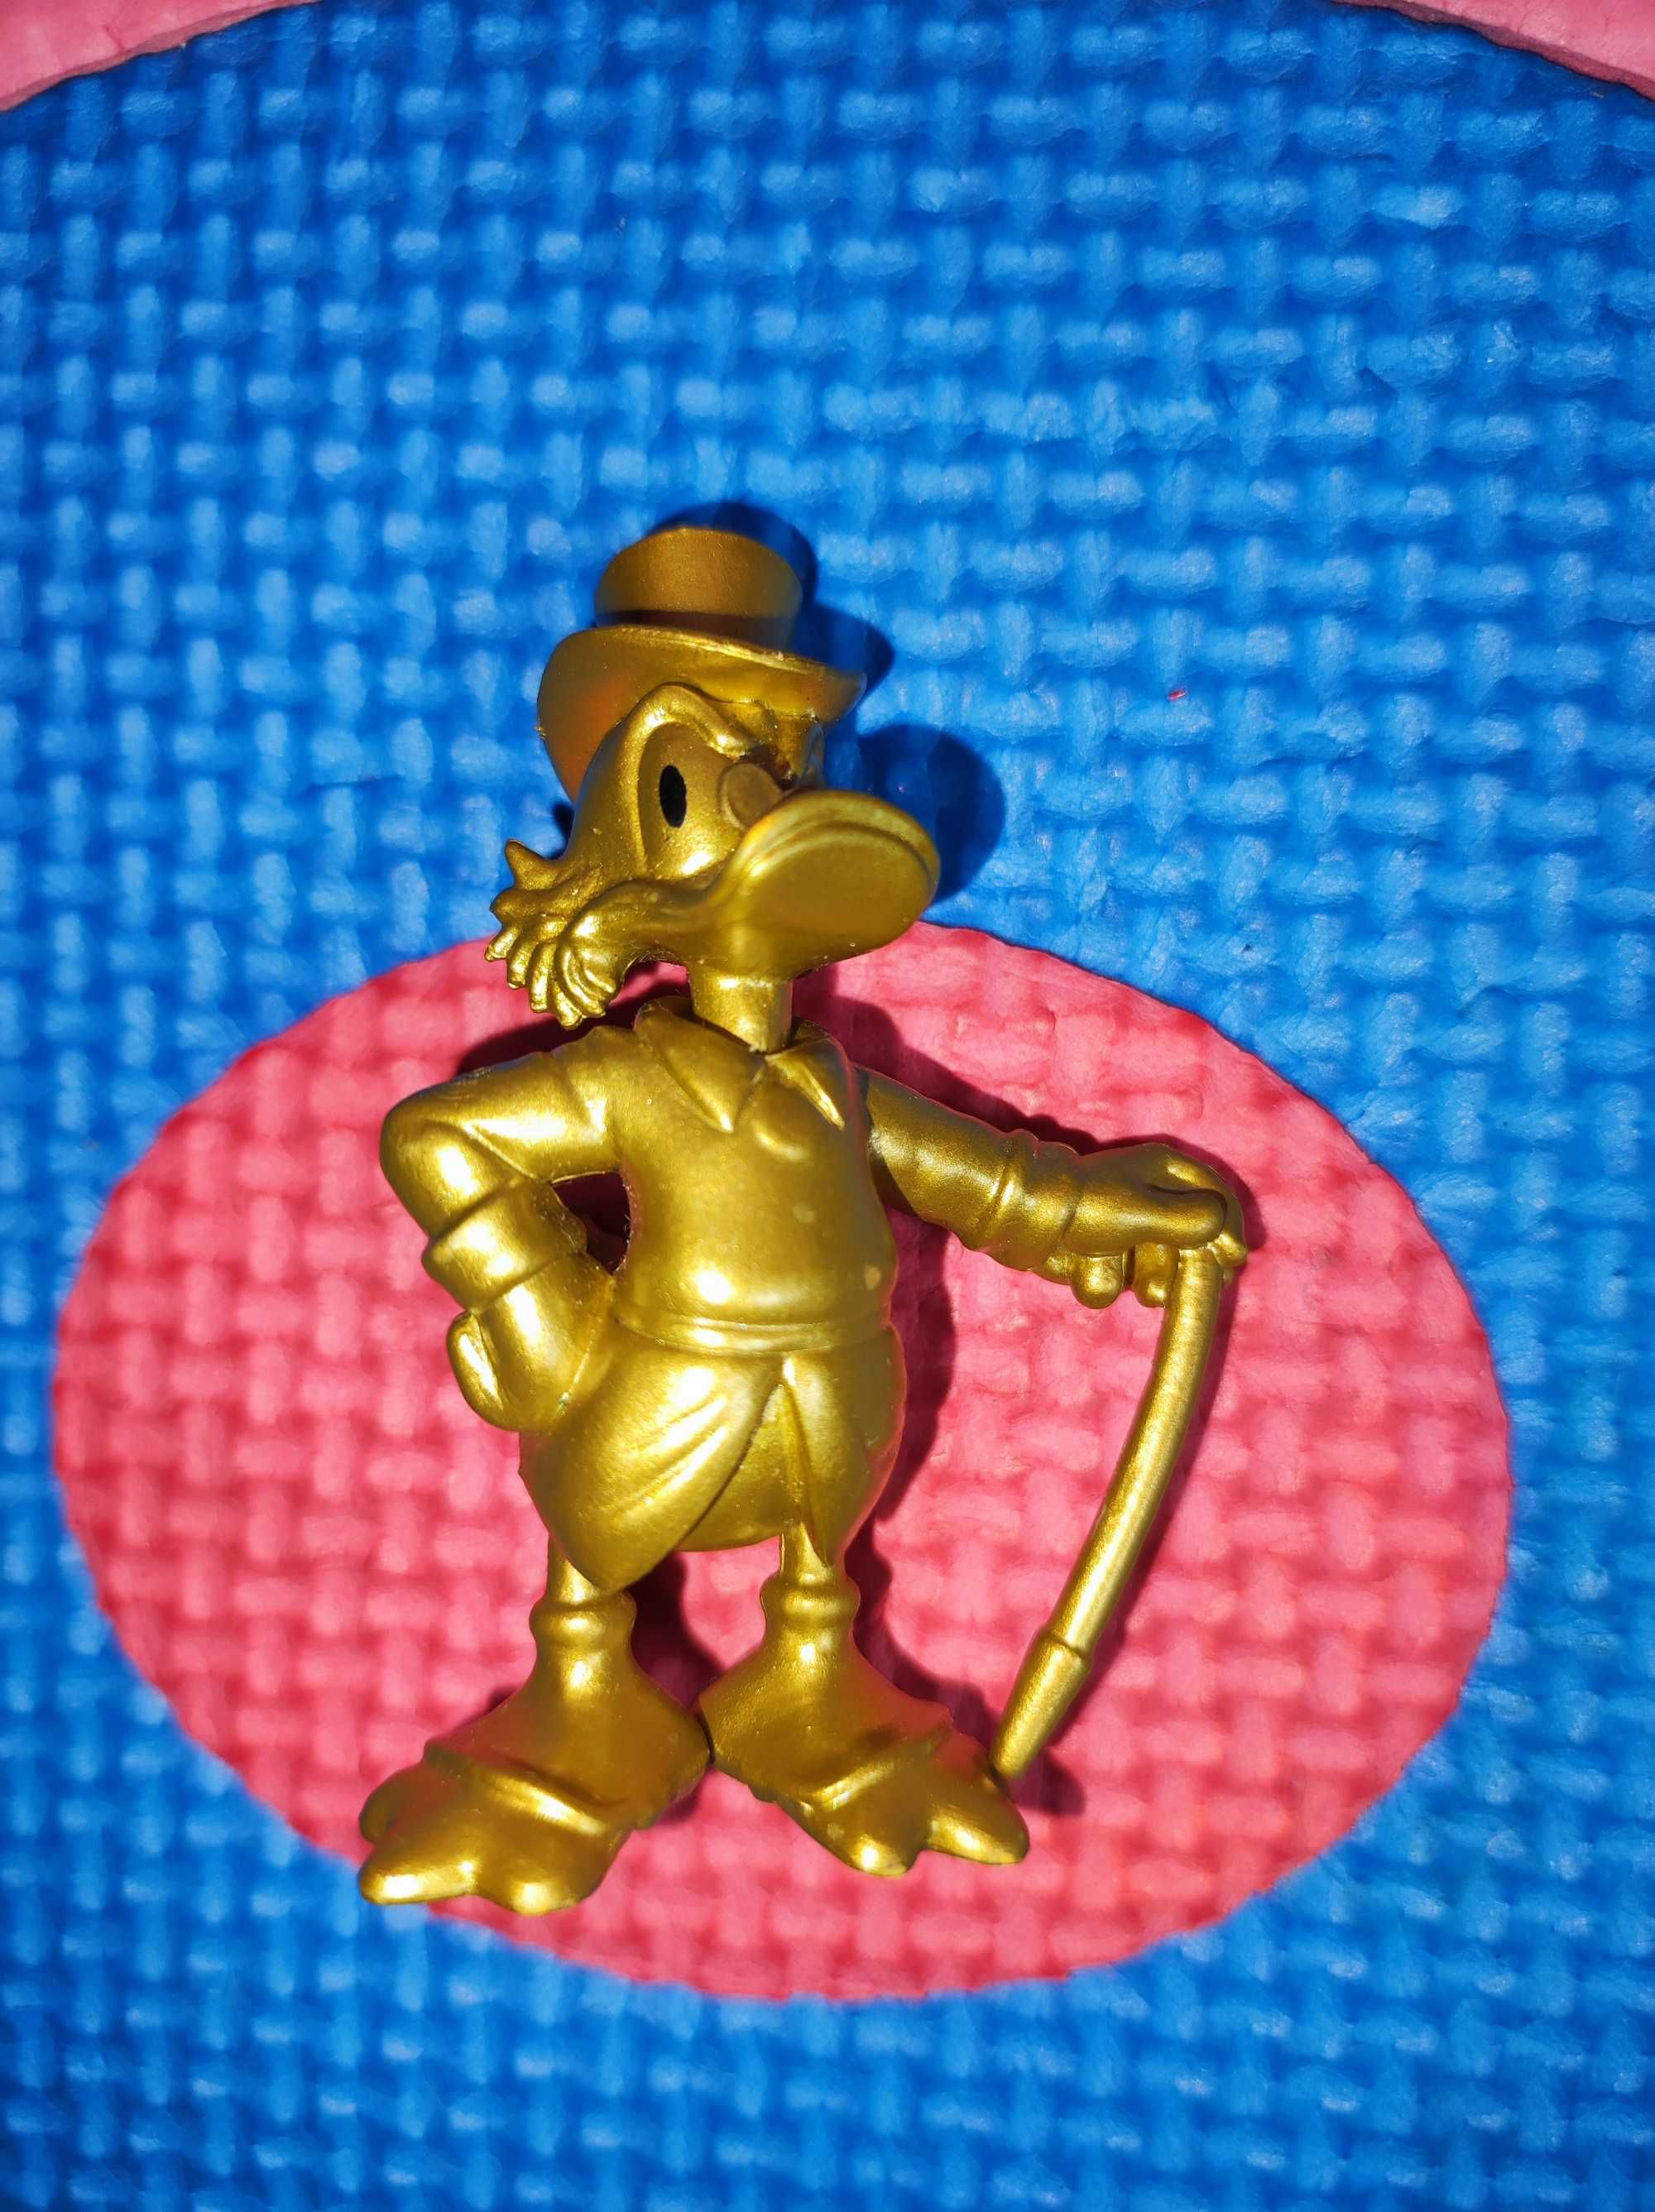 Figurine Disney Mickey , Minnie, Daisy+ altele